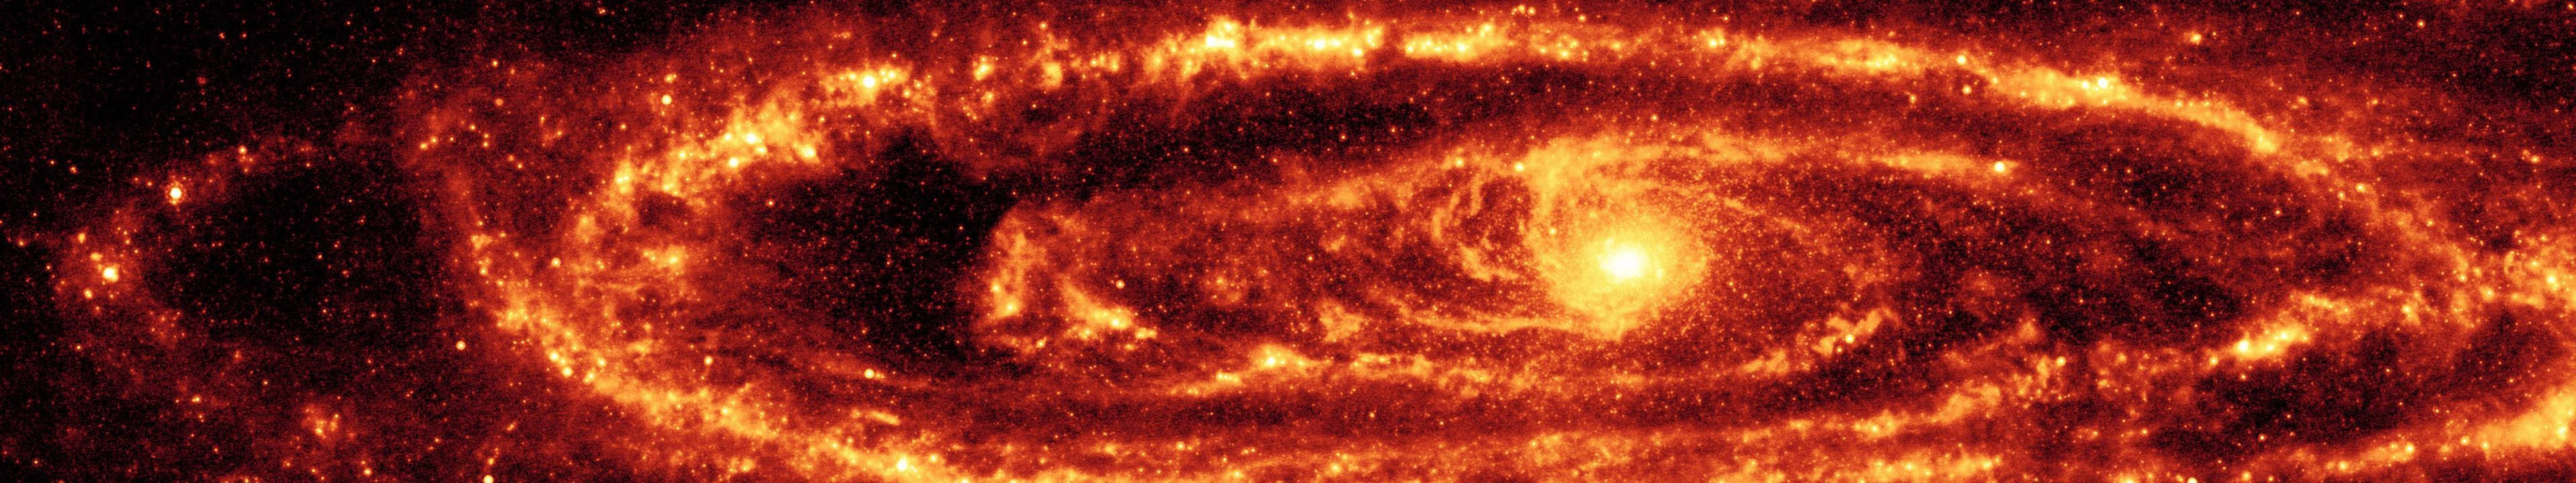 Red Andromeda Galaxy Wallpaper